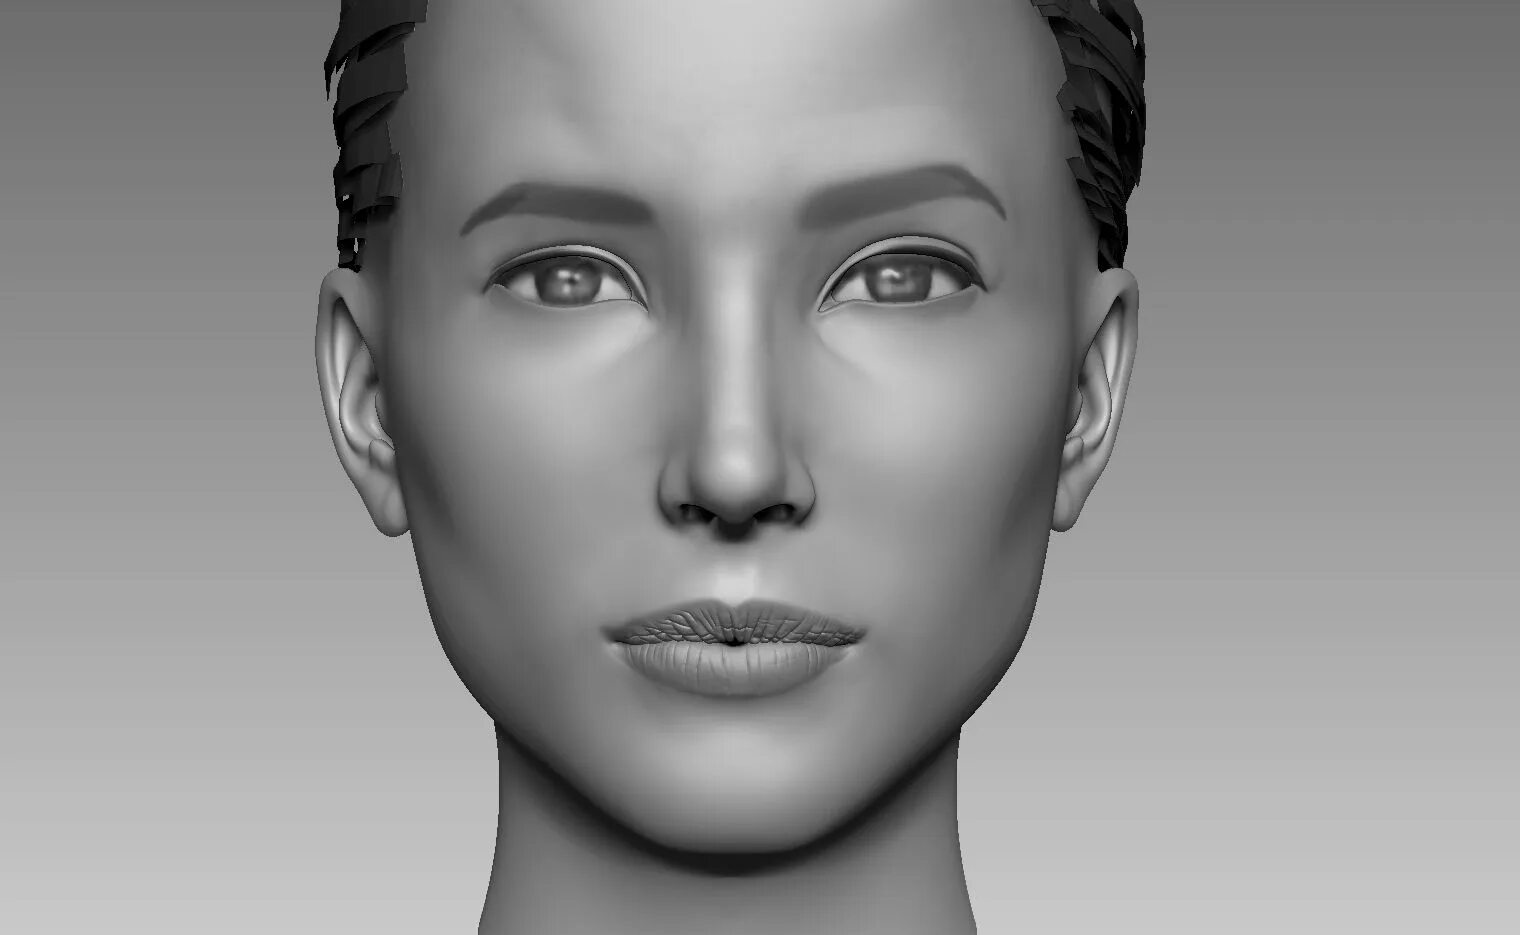 Mesh head 3d model. Збраш 3д. 3д моделирование в Zbrush. Модель лица человека. Модель д е